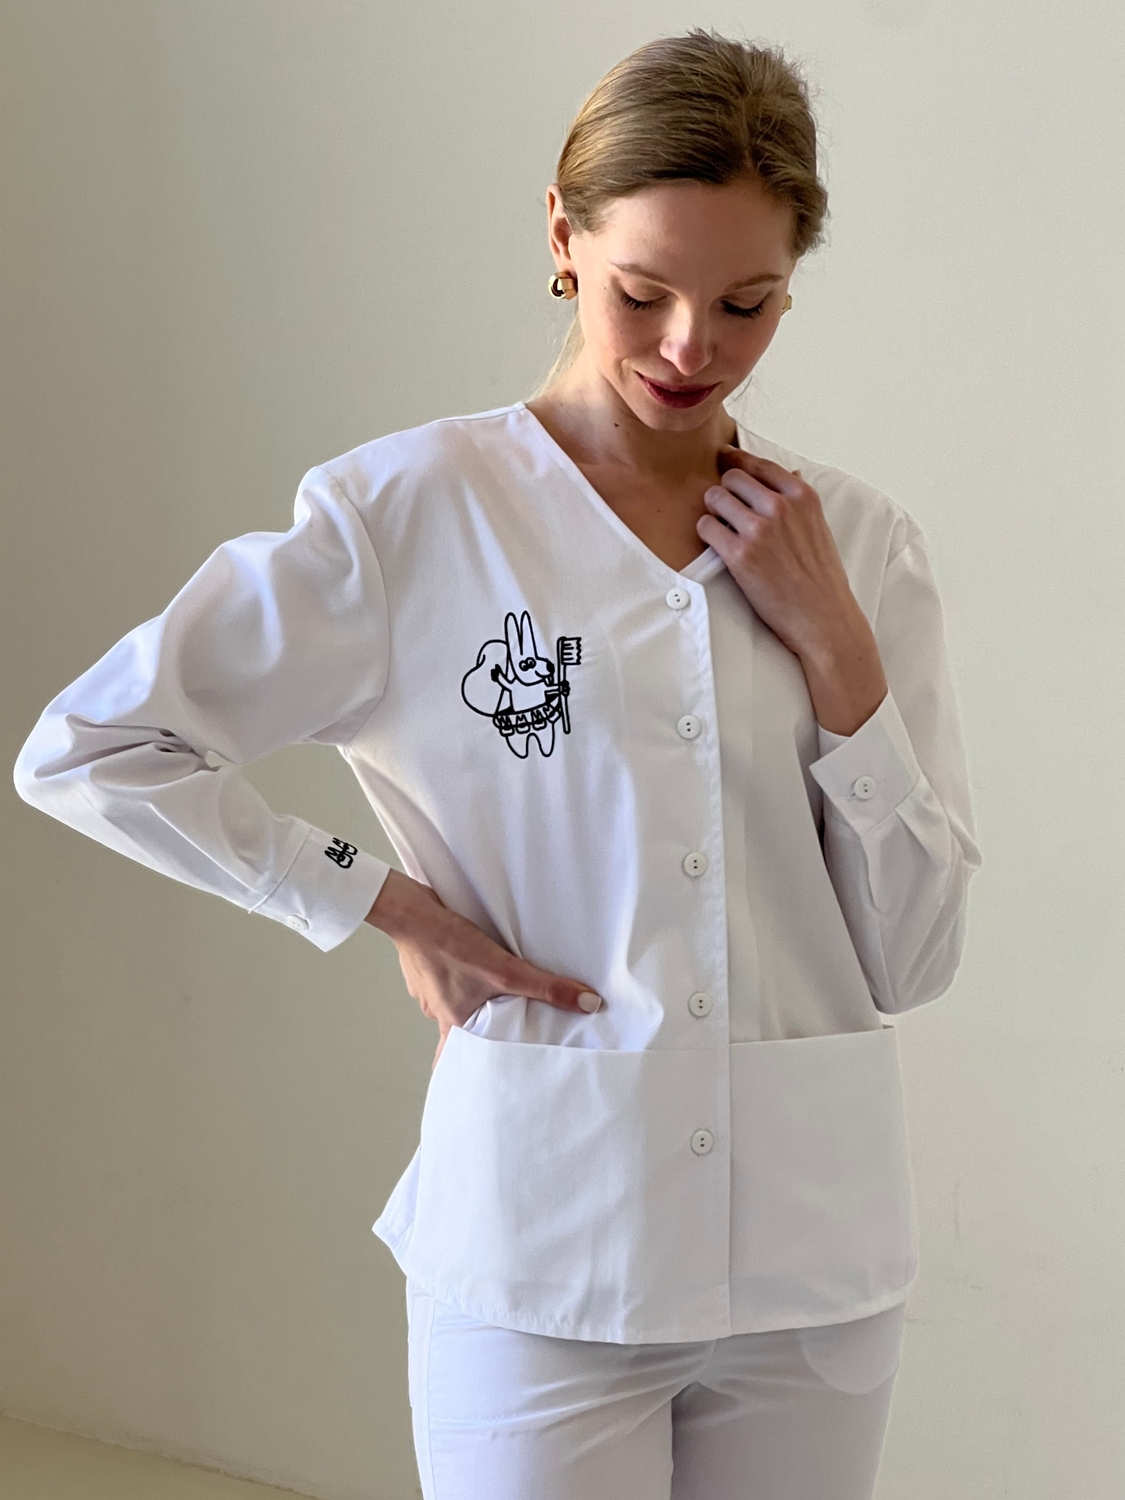 Женская медицинская куртка 24-02 с вышивкой для стоматолога